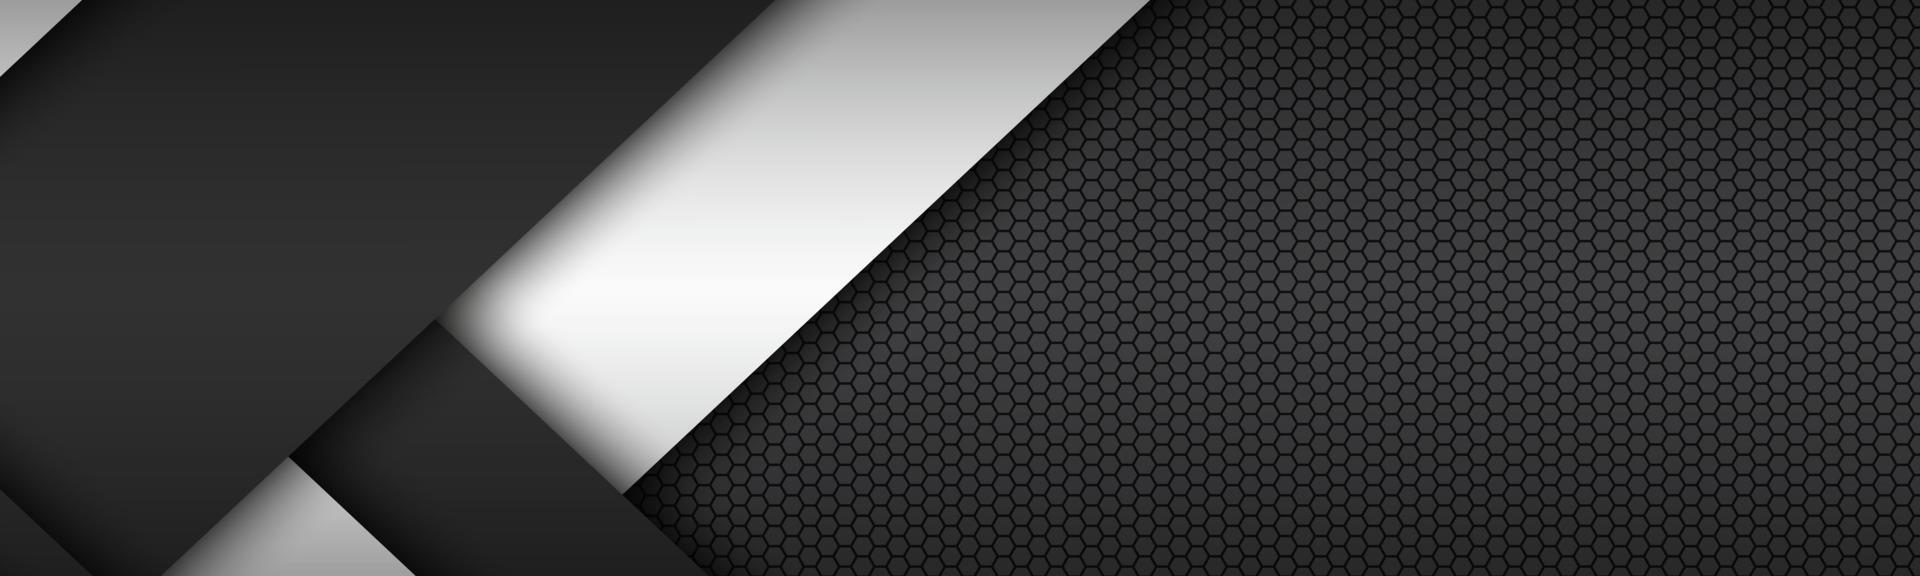 Capas en blanco y negro una encima de la otra encabezado diseño de material moderno con un patrón hexagonal banner de pantalla panorámica abstracta vector